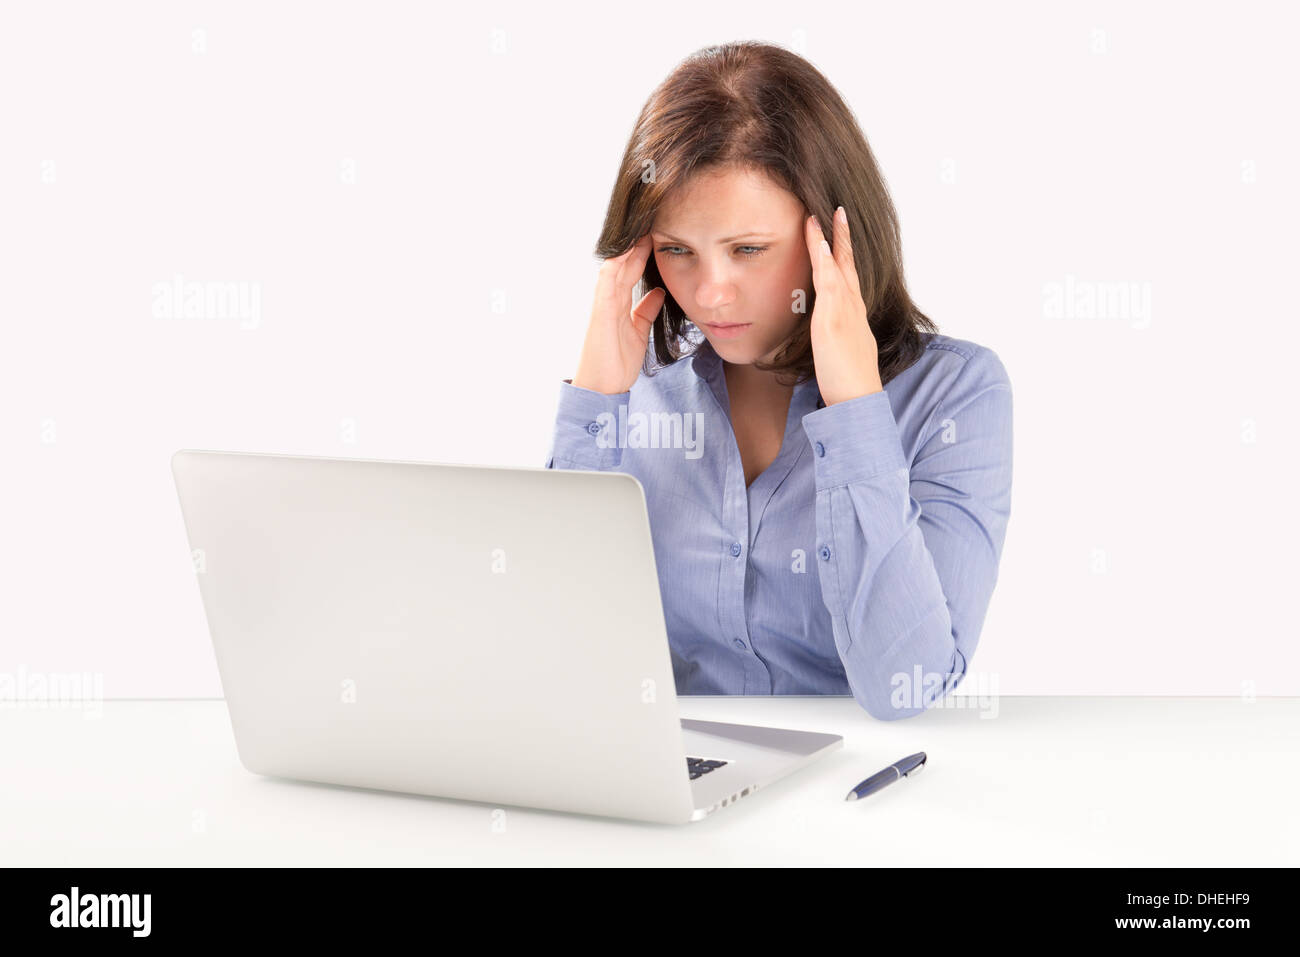 Femme d'affaires est assis en face d'un ordinateur portable moderne et tenir la main derrière sa tête, concept d'entreprise Banque D'Images